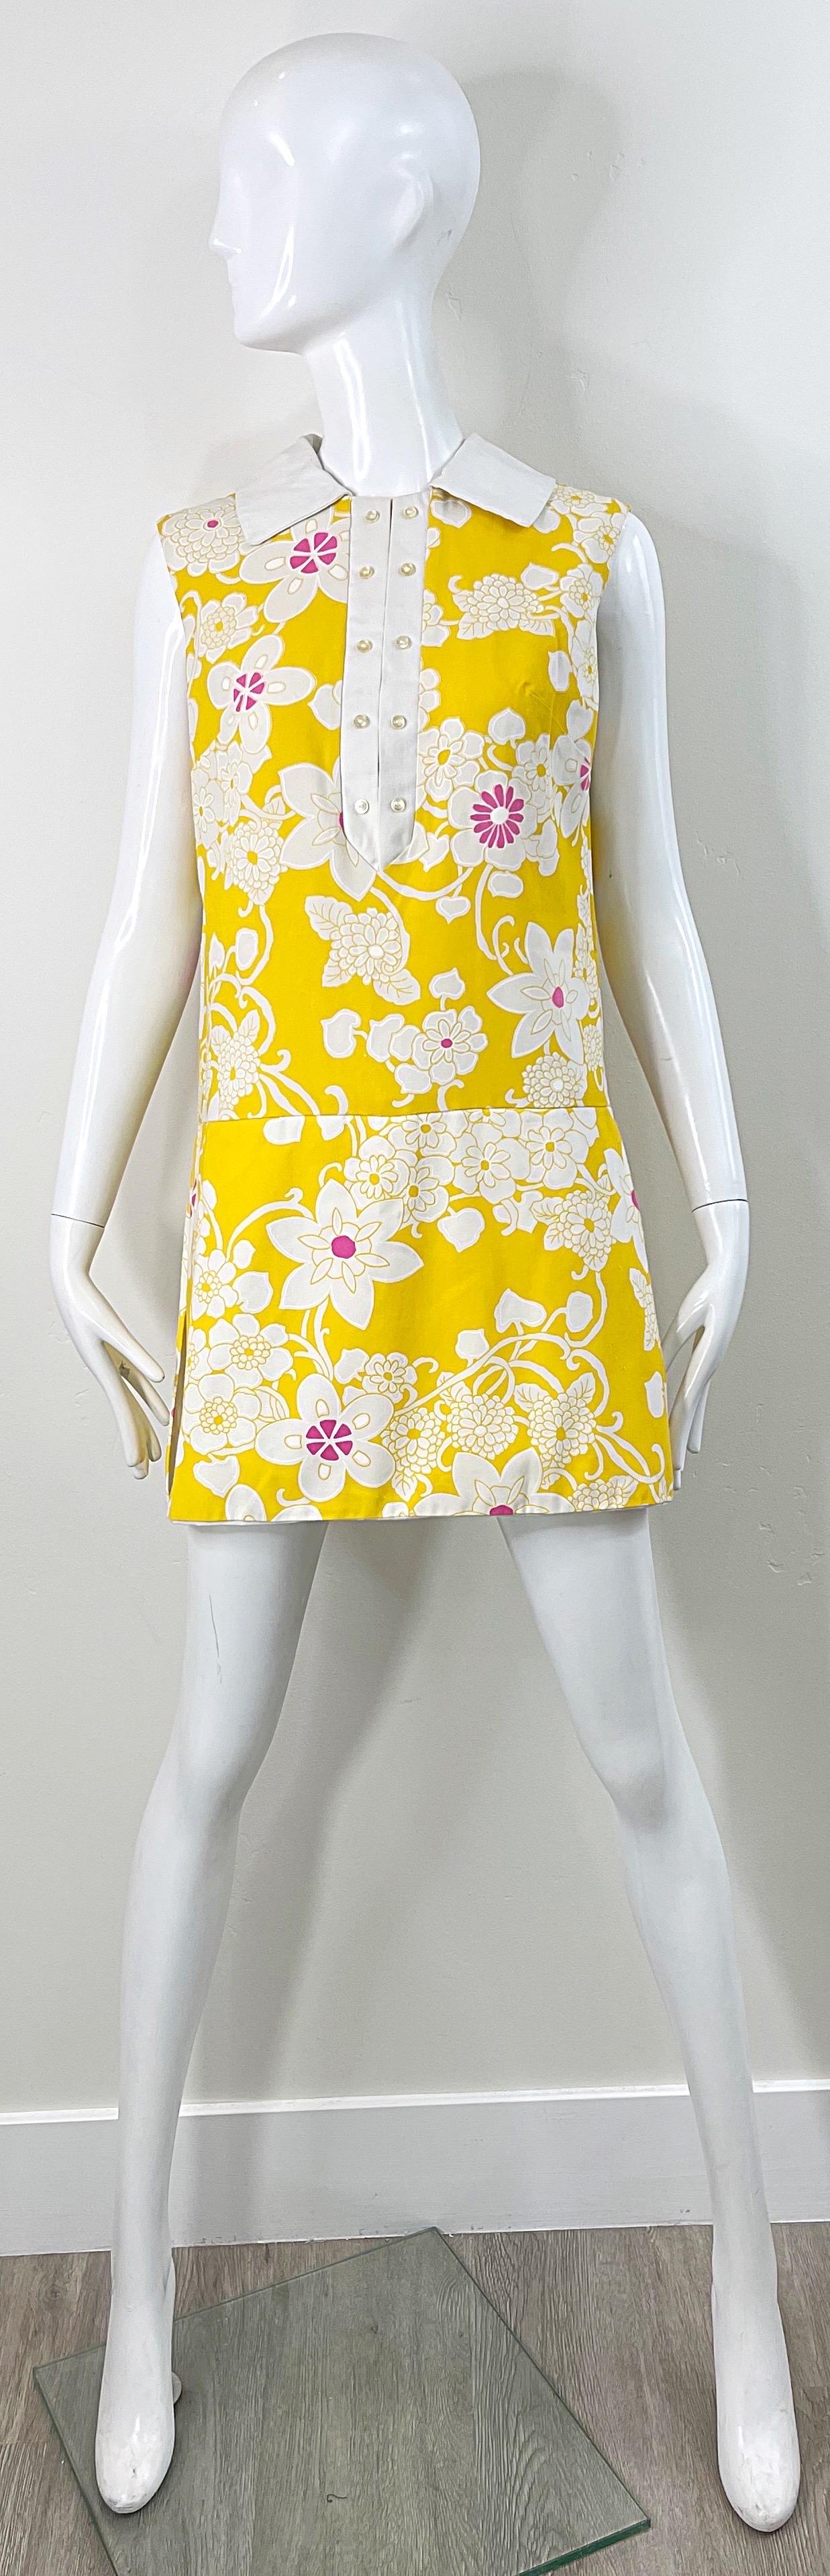 Barboteuse chic des années 1960 jaune, rose et blanche ! Le fond est jaune vif et les fleurs sont imprimées en rose vif et en blanc. Ressemble à une robe, mais est en fait une barboteuse avec une jupe par-dessus. Boutons fantaisie sur le devant.